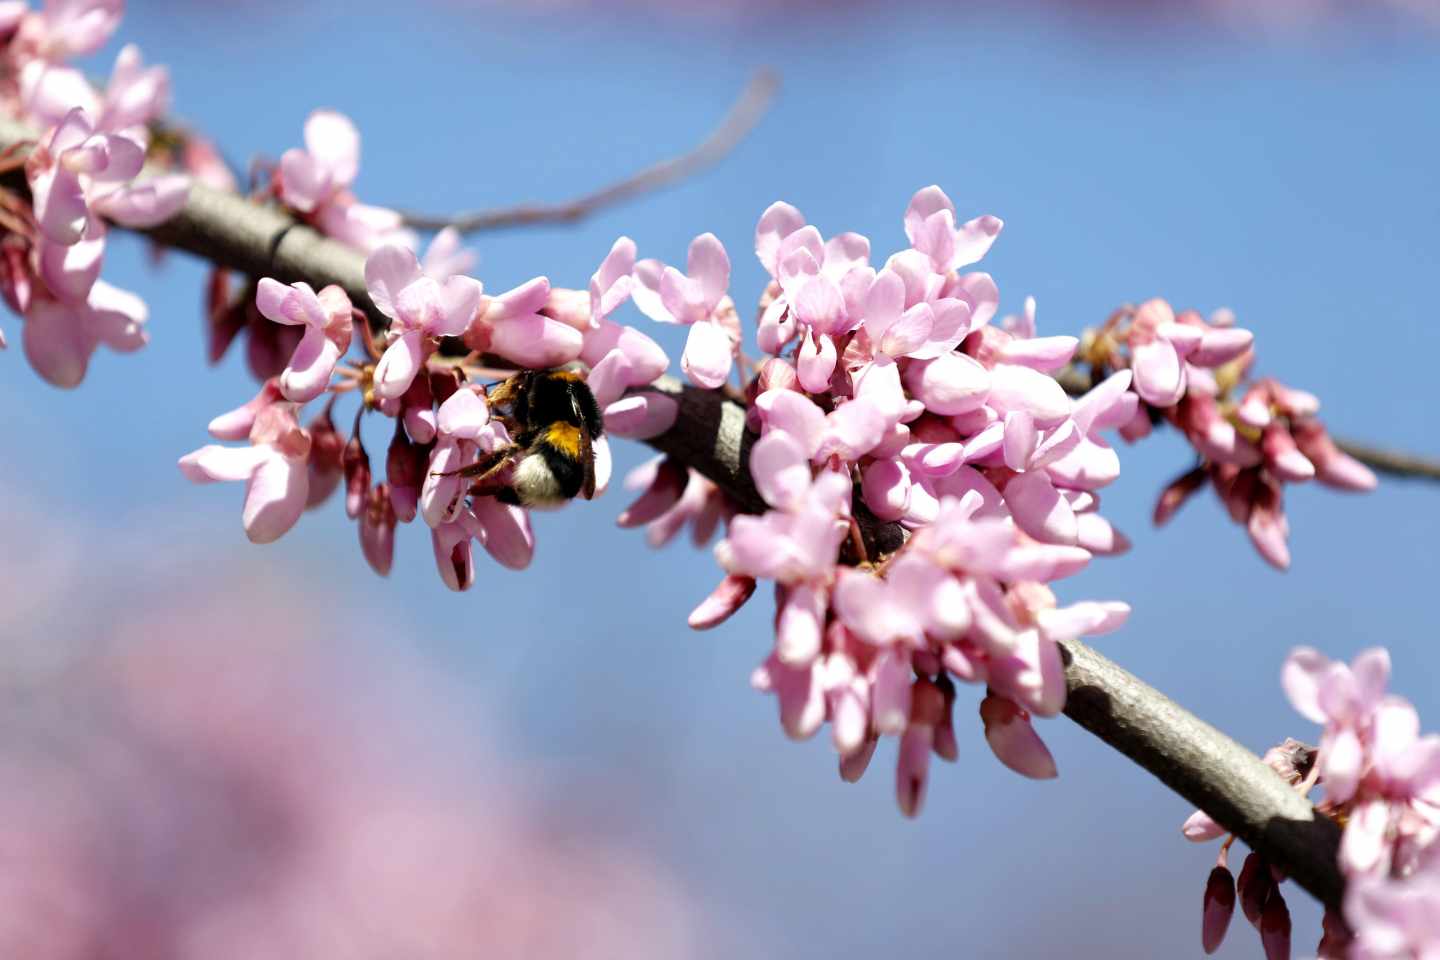 Un abejorro recoge polen de un árbol en flor este miércoles en Bilbao.